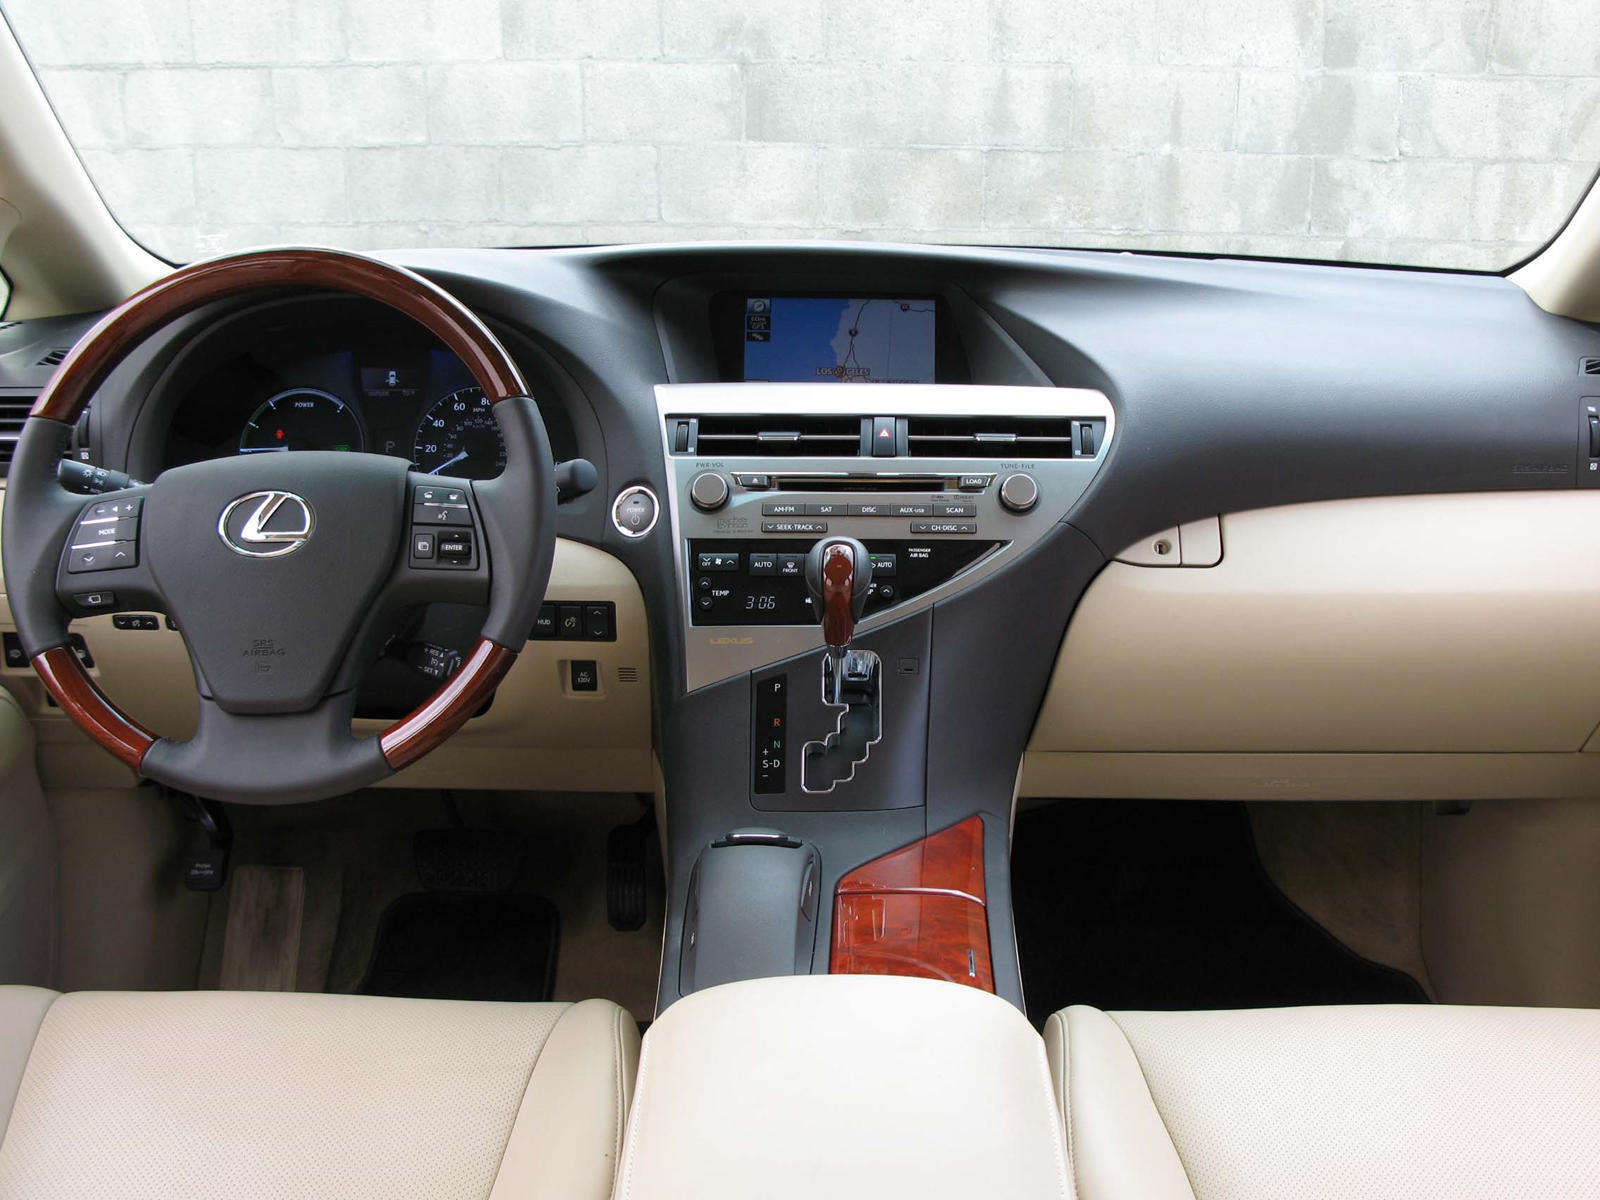 2012 Lexus RX Hybrid Dashboard